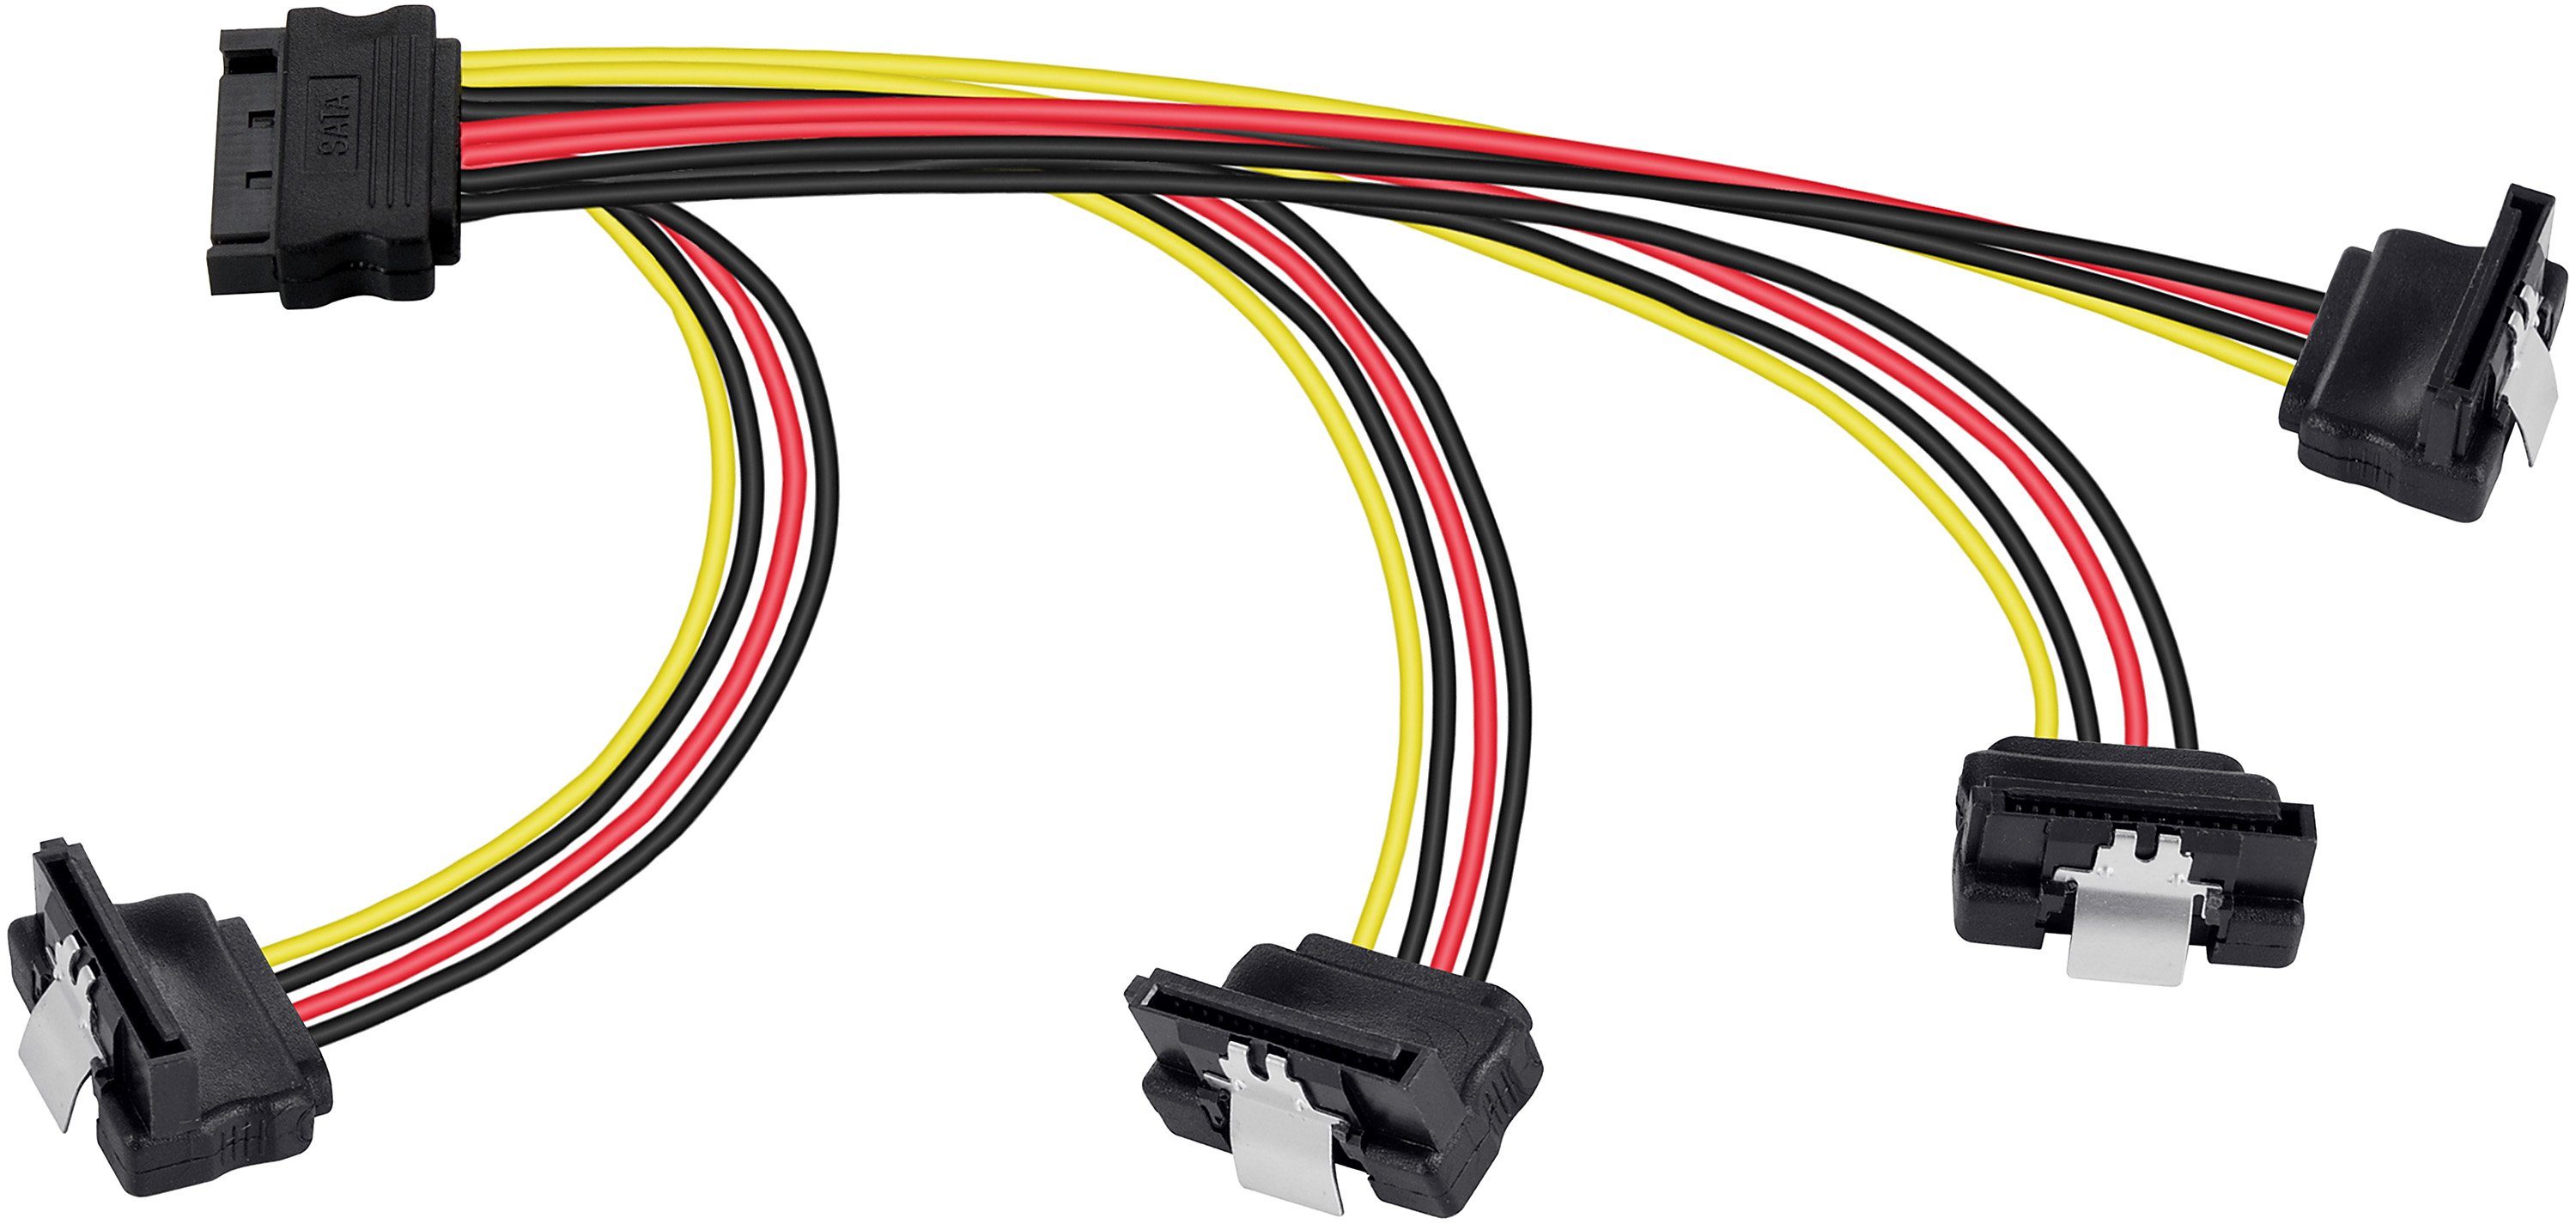 Poppstar SATA Stromkabel Verteiler 4-fach für HDD, SSD, Festplatte, Motherboard Stromkabel, Adapter 20cm 1x Stecker (m) auf 4x Buchse (w) gewinkelt Splitter gerade/gewinkelt (20cm)